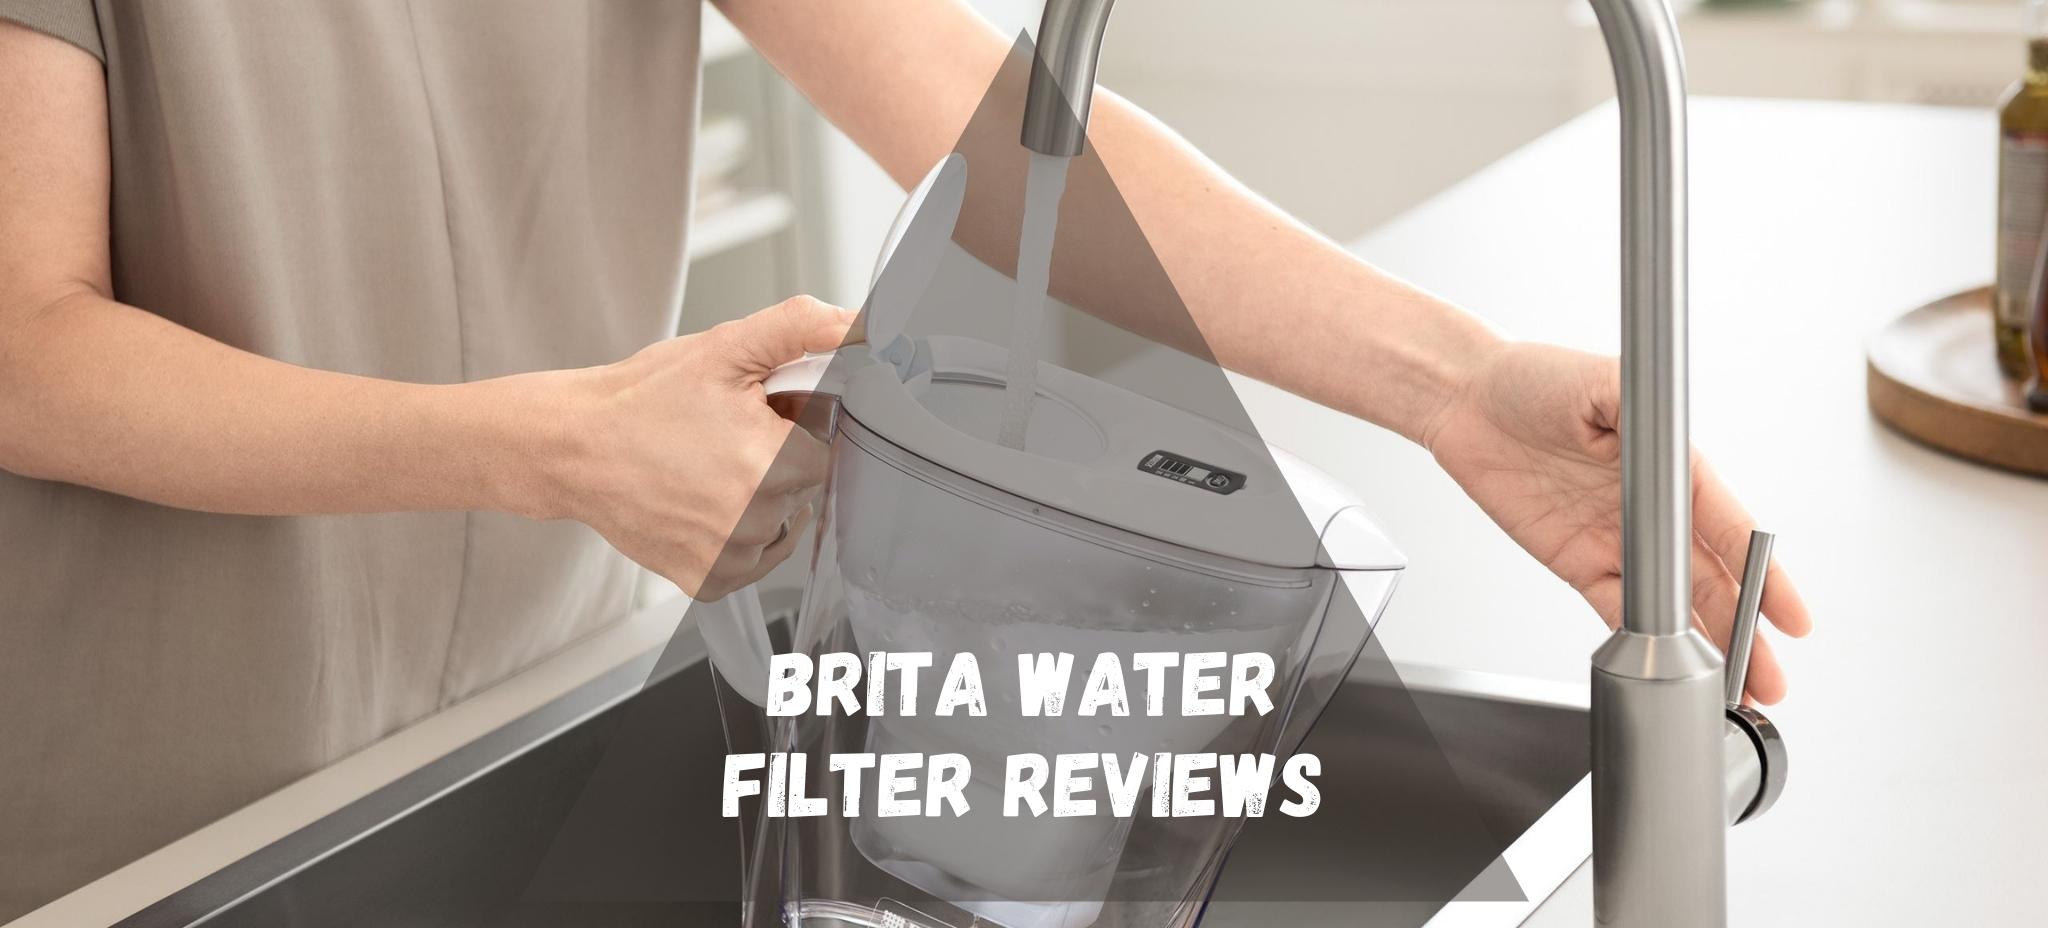 Brita Water Filter Reviews